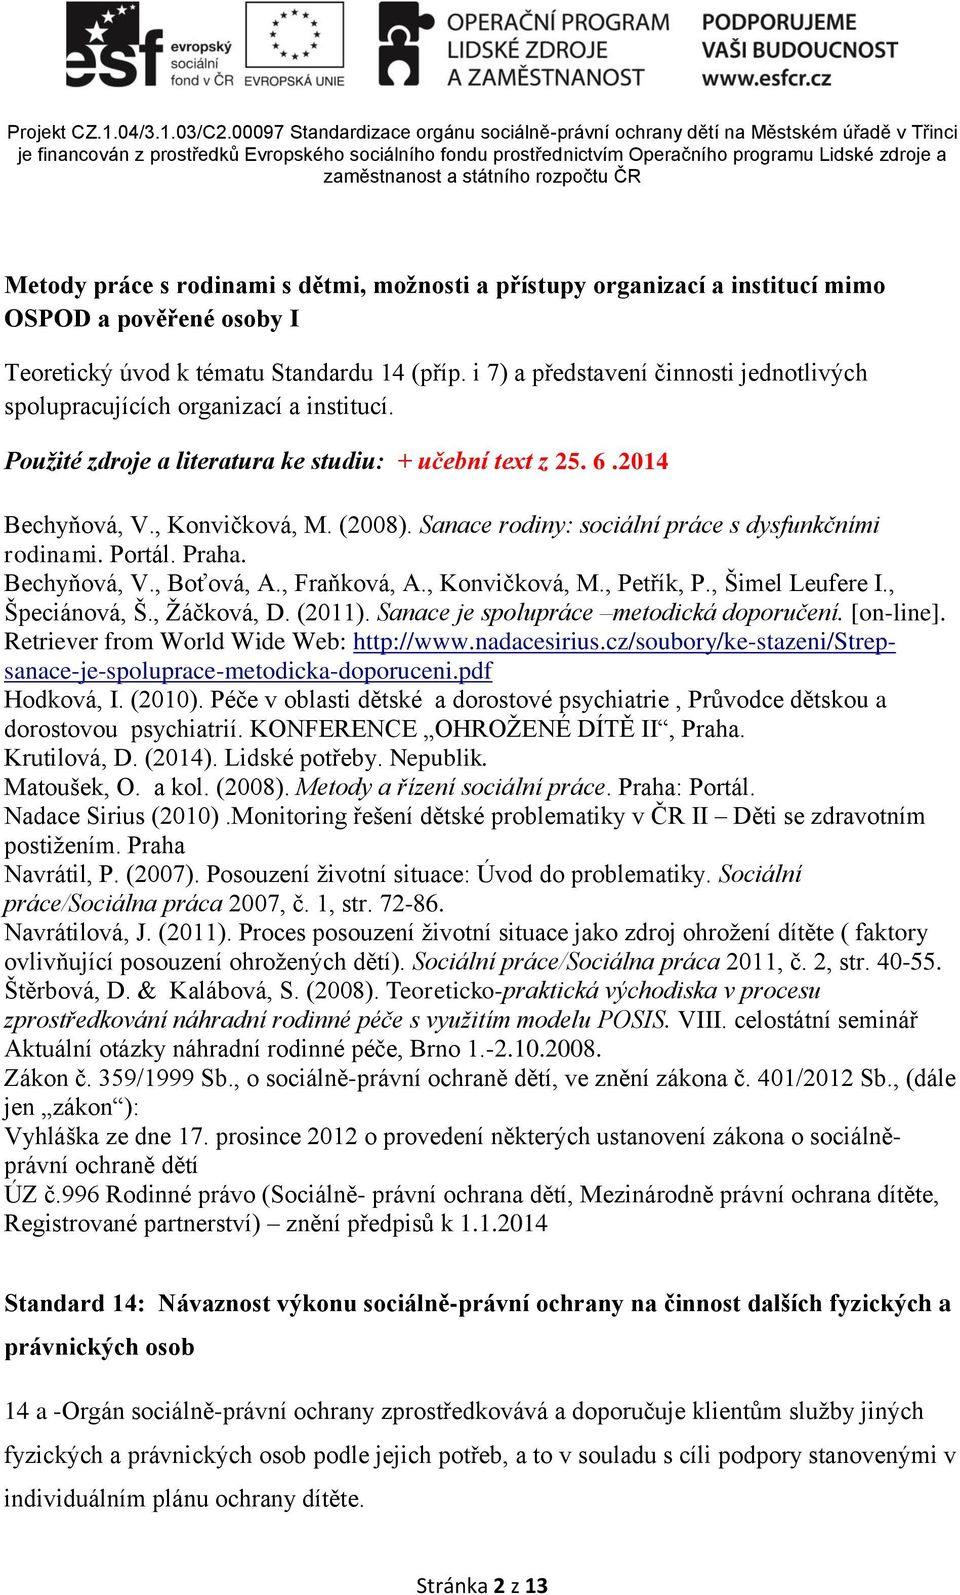 Sanace rodiny: sociální práce s dysfunkčními rodinami. Portál. Praha. Bechyňová, V., Boťová, A., Fraňková, A., Konvičková, M., Petřík, P., Šimel Leufere I., Špeciánová, Š., Žáčková, D. (2011).